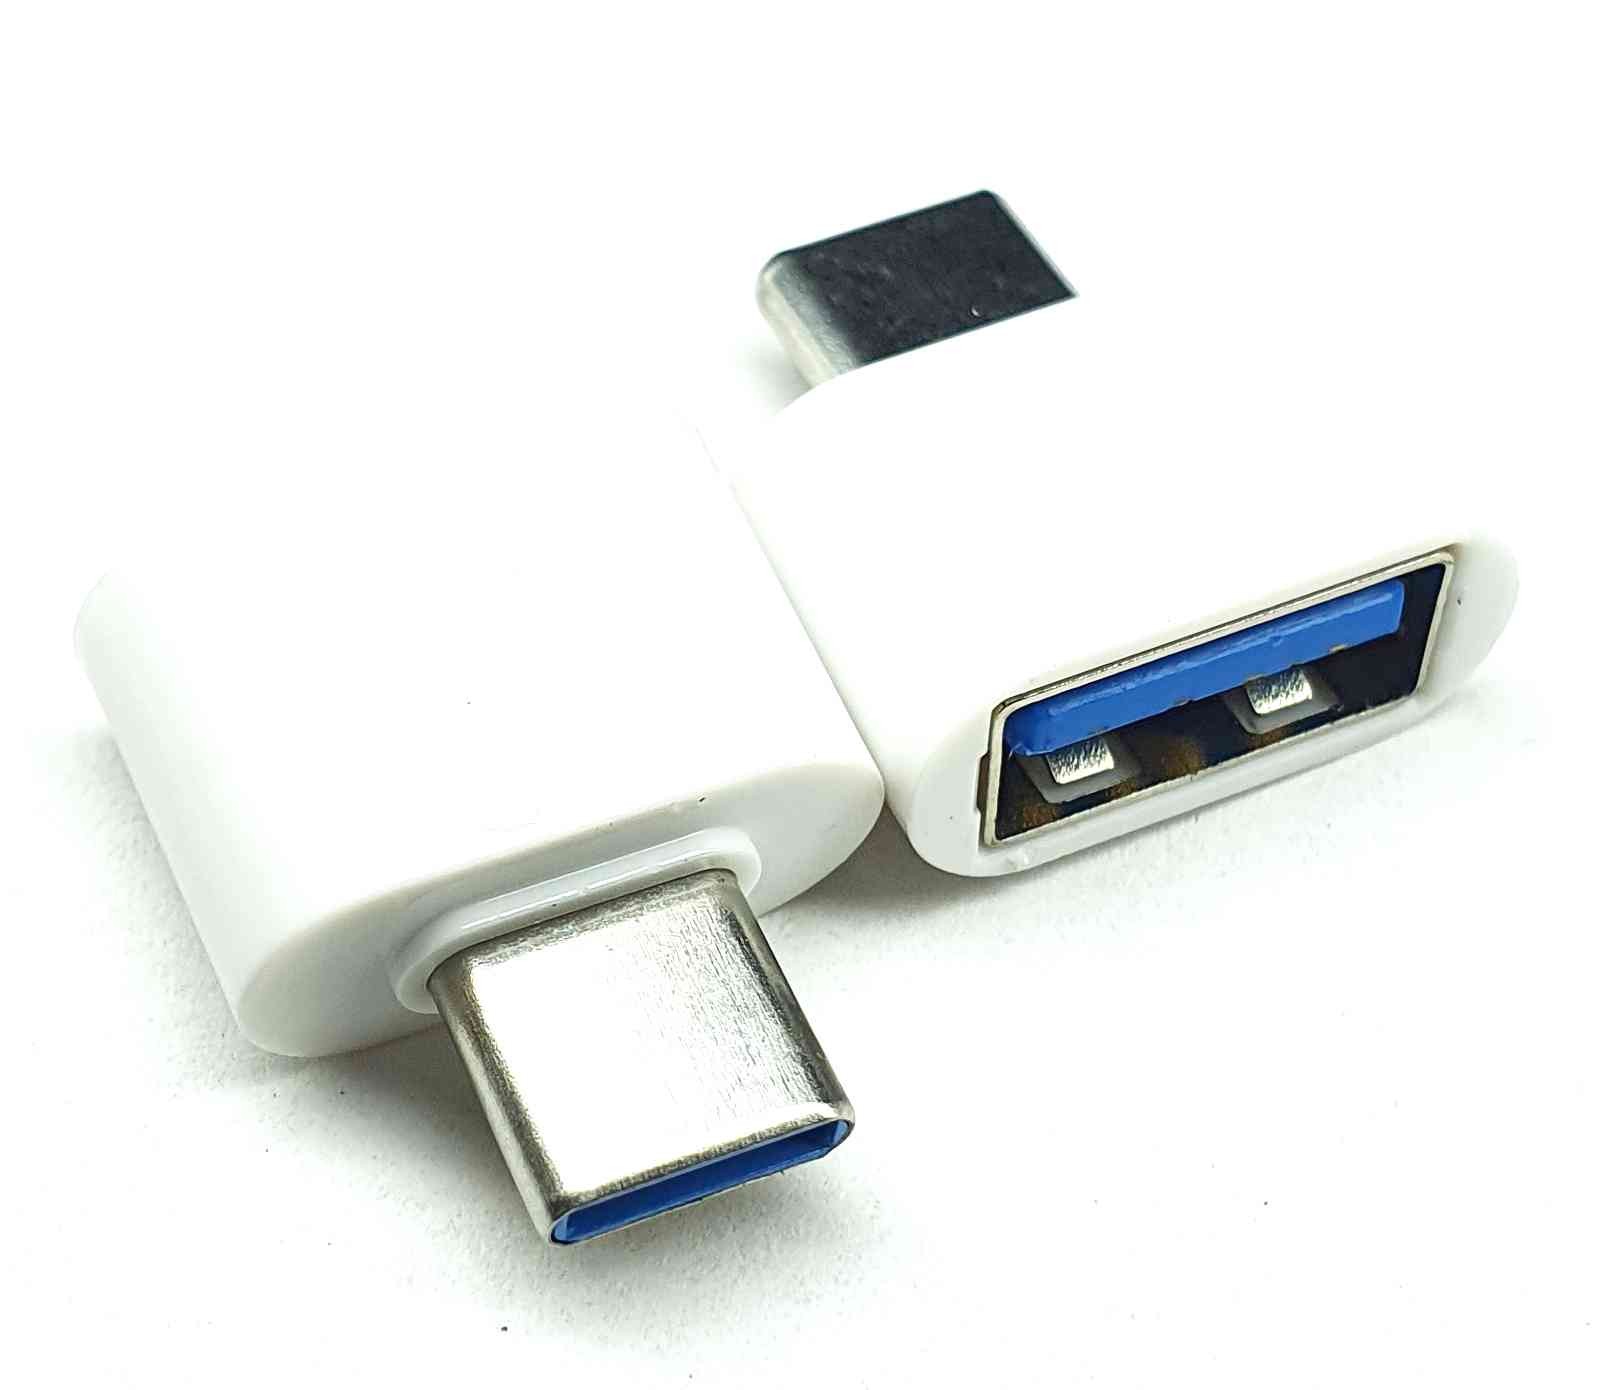 Adaptador jack USB C a plug USB 3.0 Steren Tienda en Lí